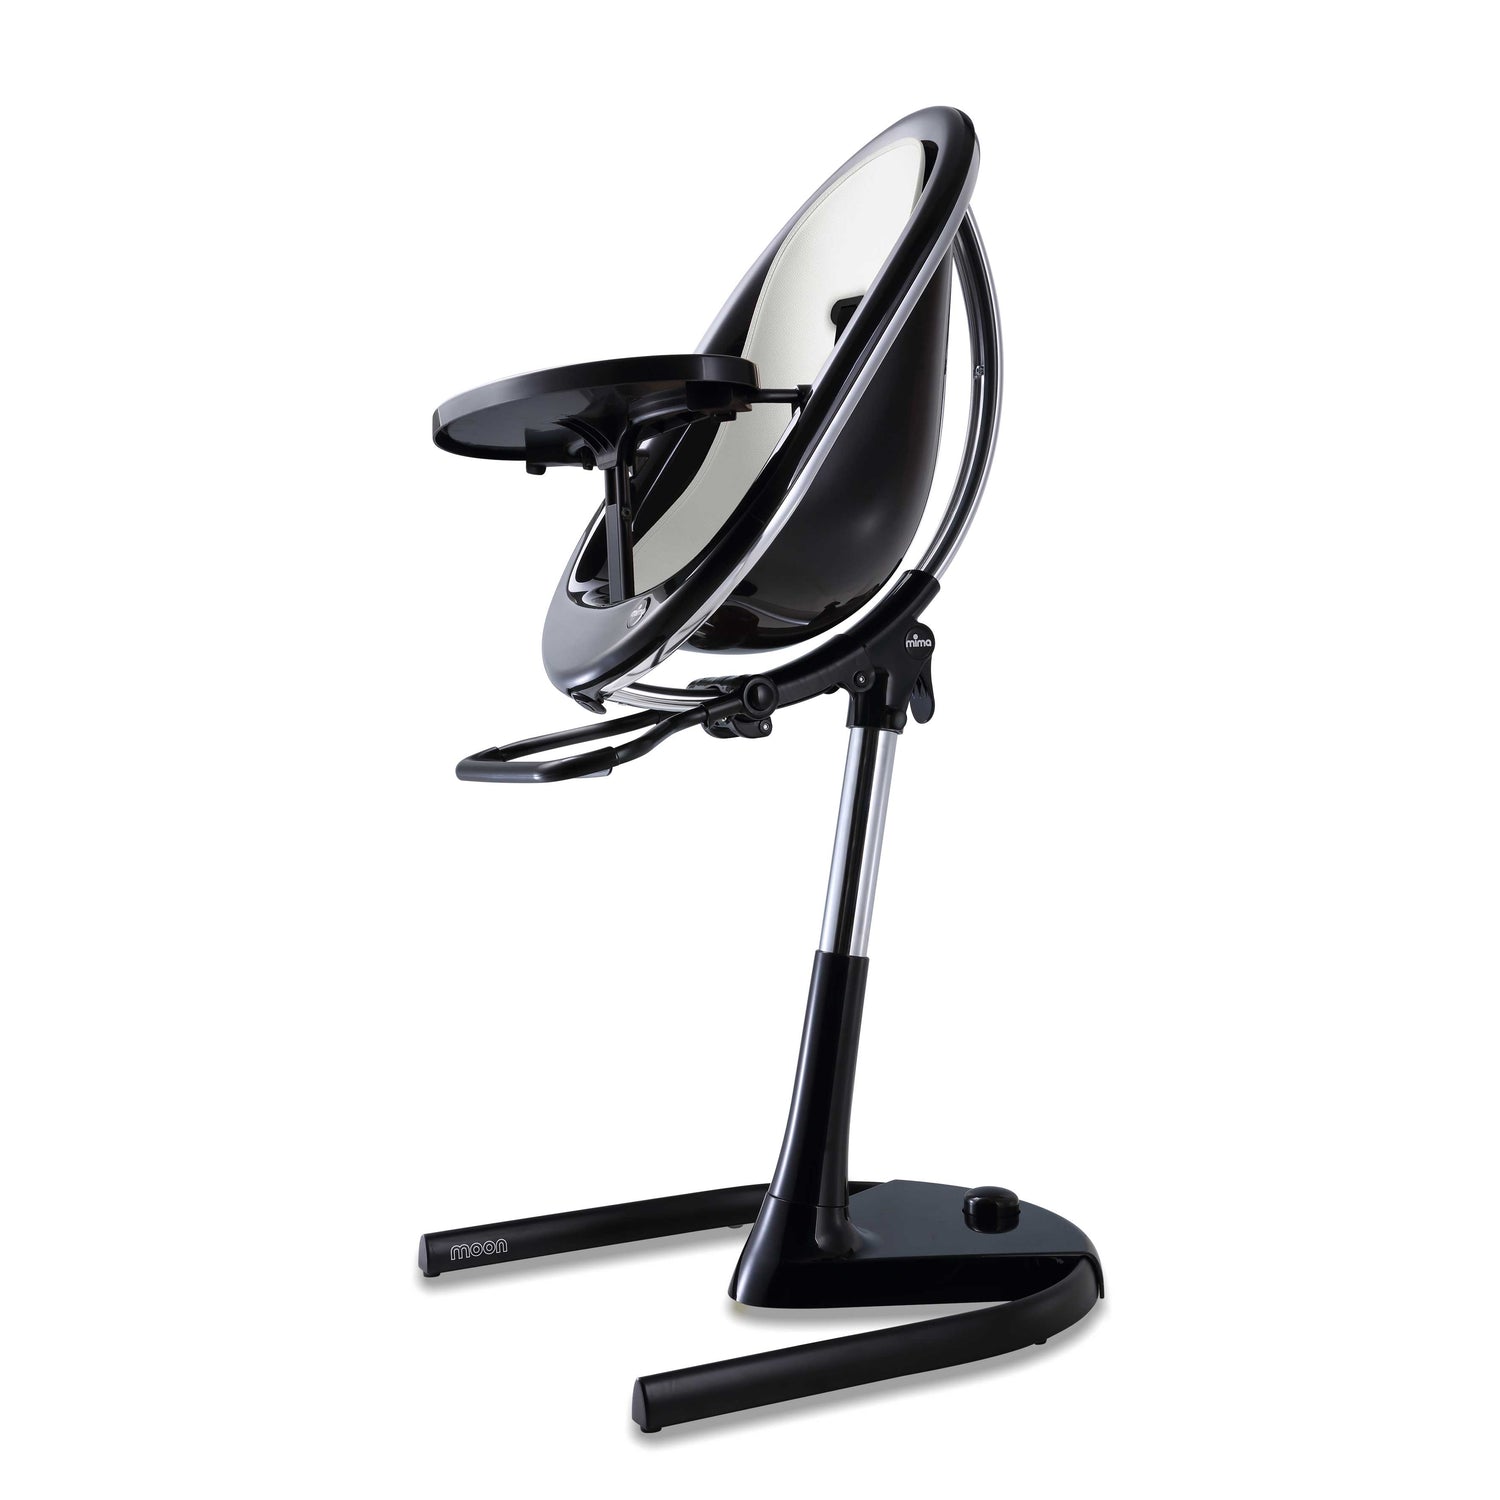 mima® moon 2G high chair